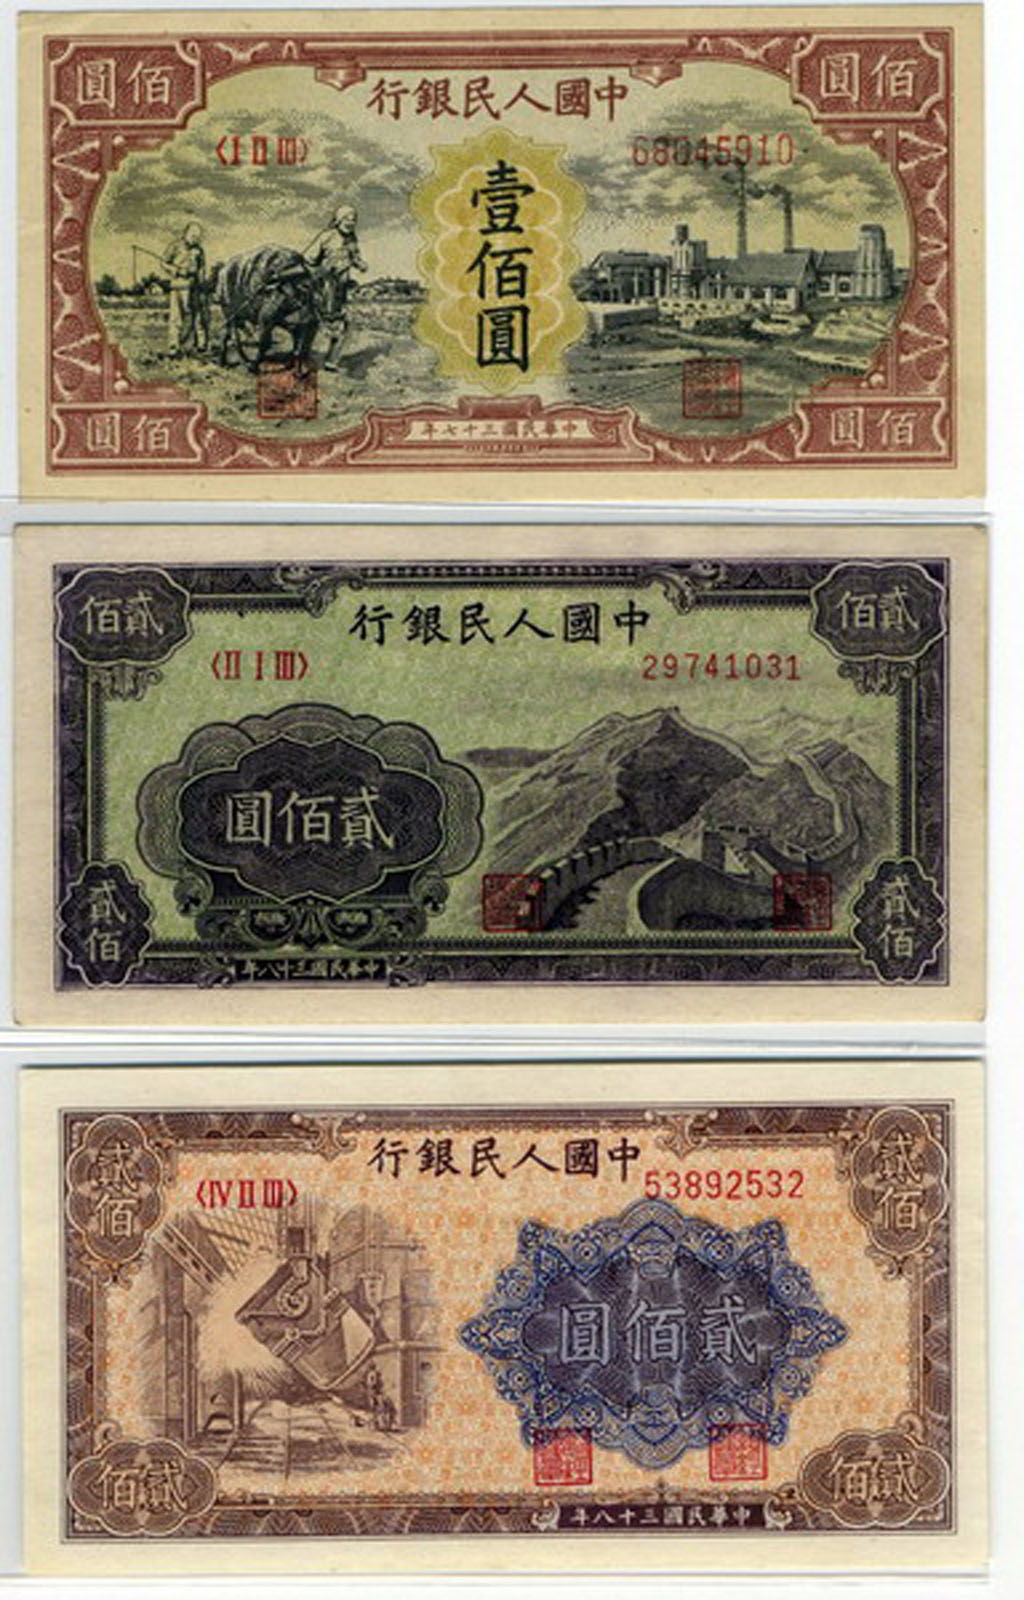 1949年第一版人民币壹佰圆耕地与工厂、贰佰